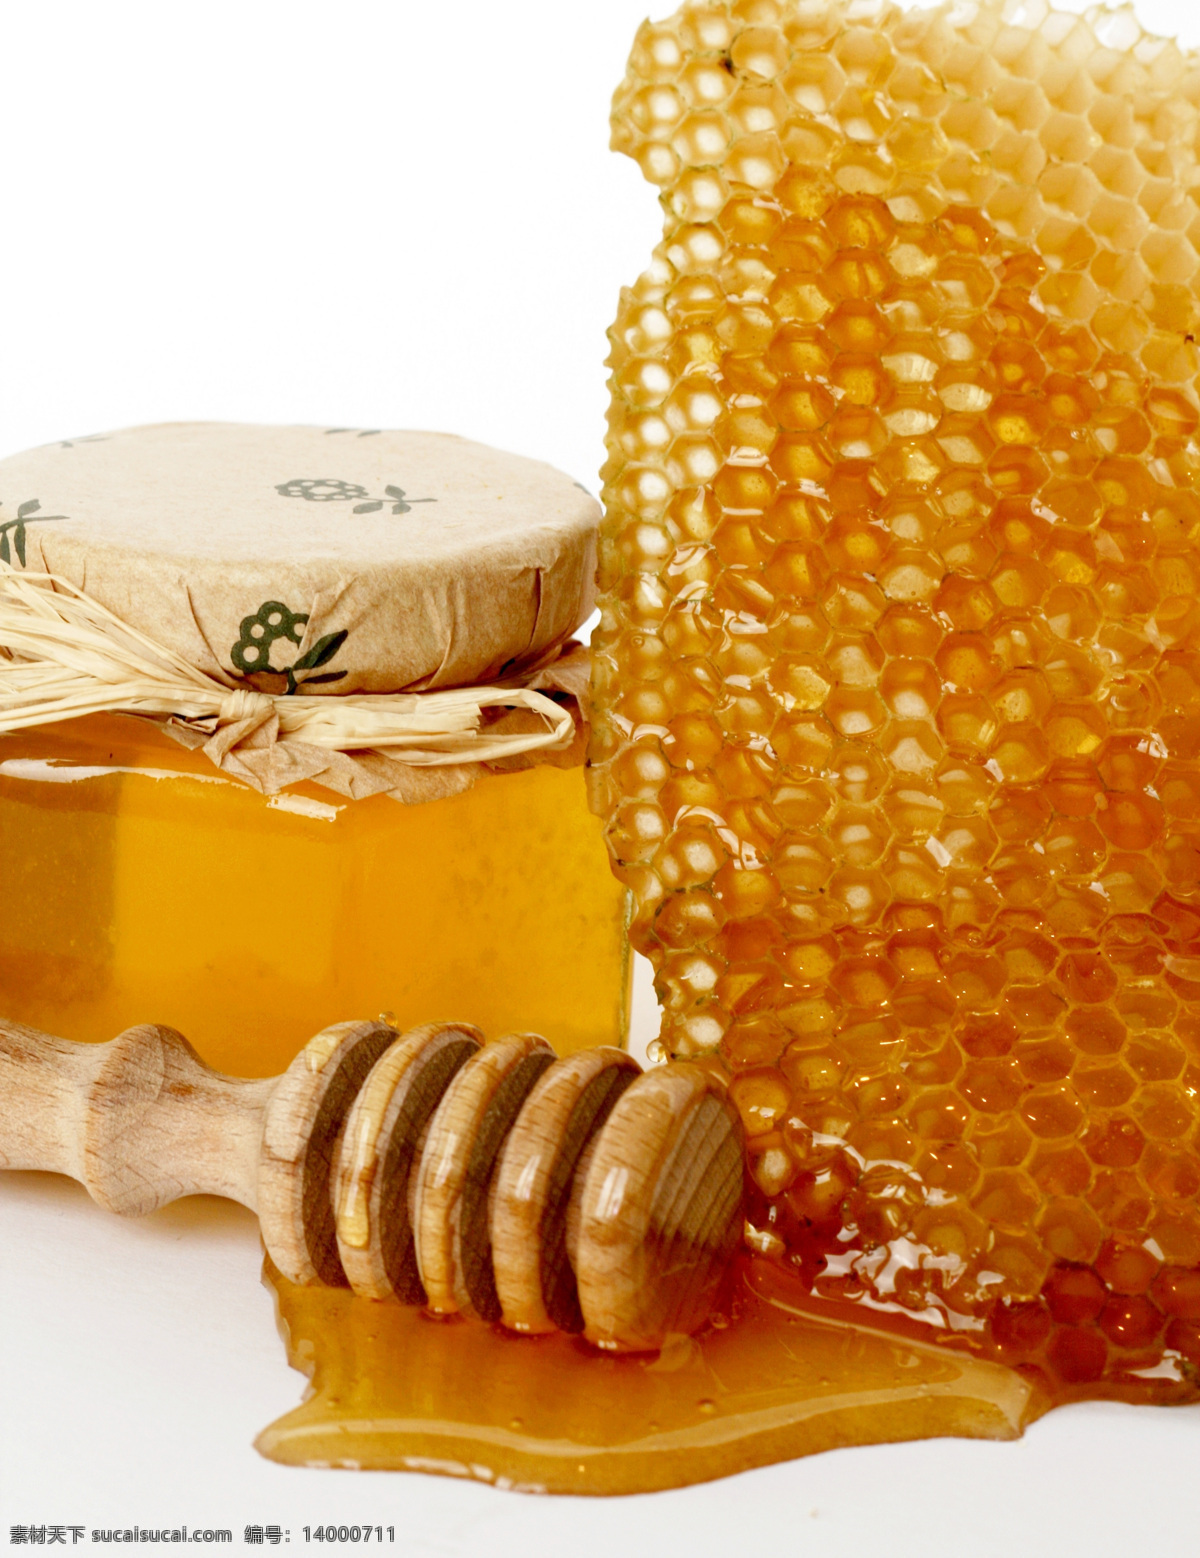 花蜜 蜜糖 蜂蜜水 天然蜂蜜 手工蜂蜜 手工花蜜 天然花蜜 蜂窝蜜 纯天然蜂蜜 纯手工蜂蜜 蜂蜜巢 蜂巢 蜂巢蜜 餐饮美食 食物原料